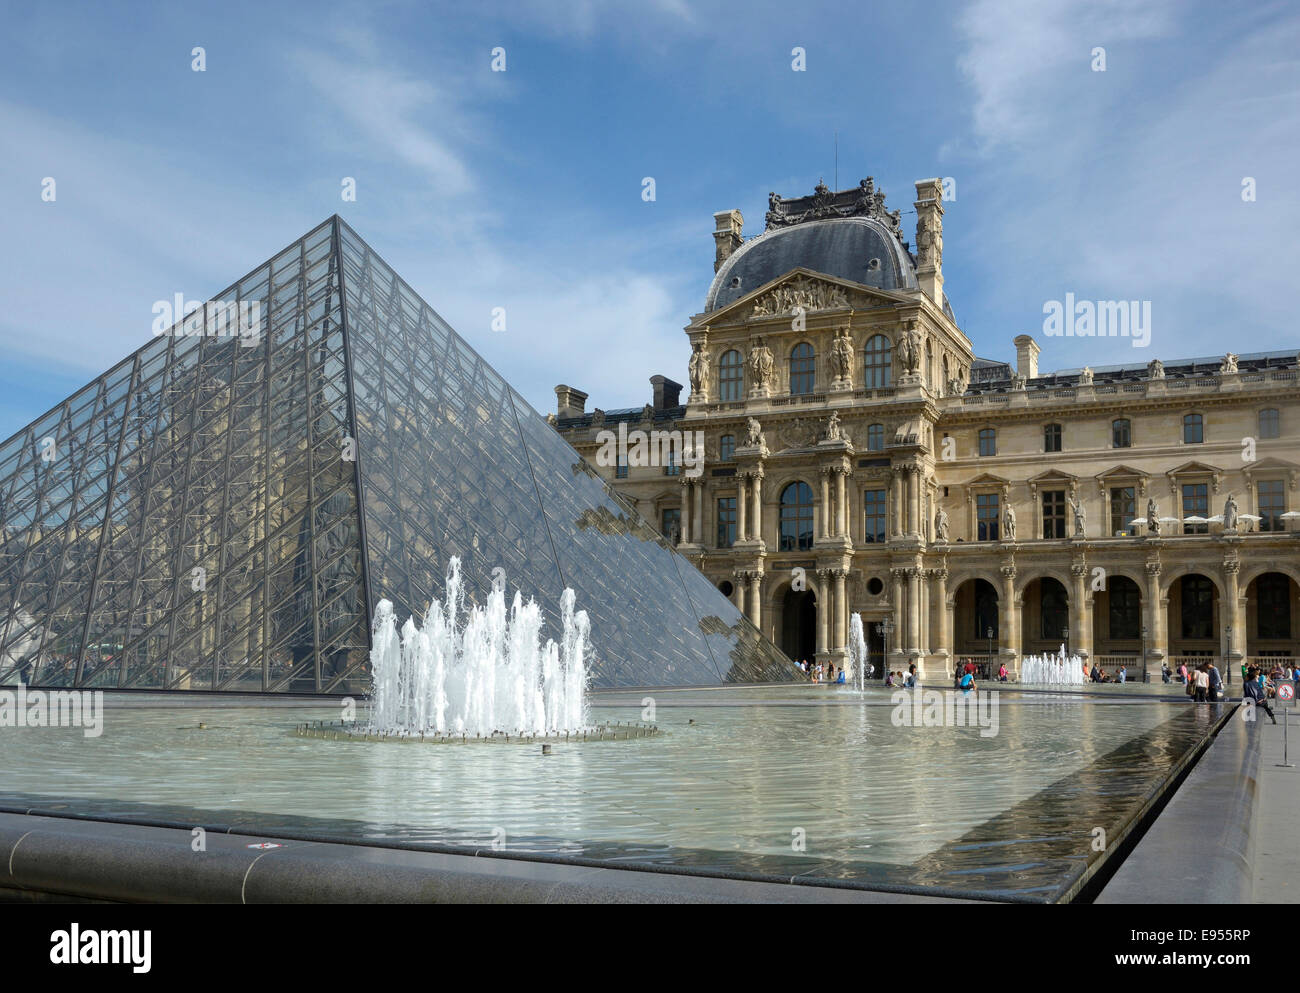 Musée du Louvre with the pyramid, Paris, Île-de-France, France Stock Photo